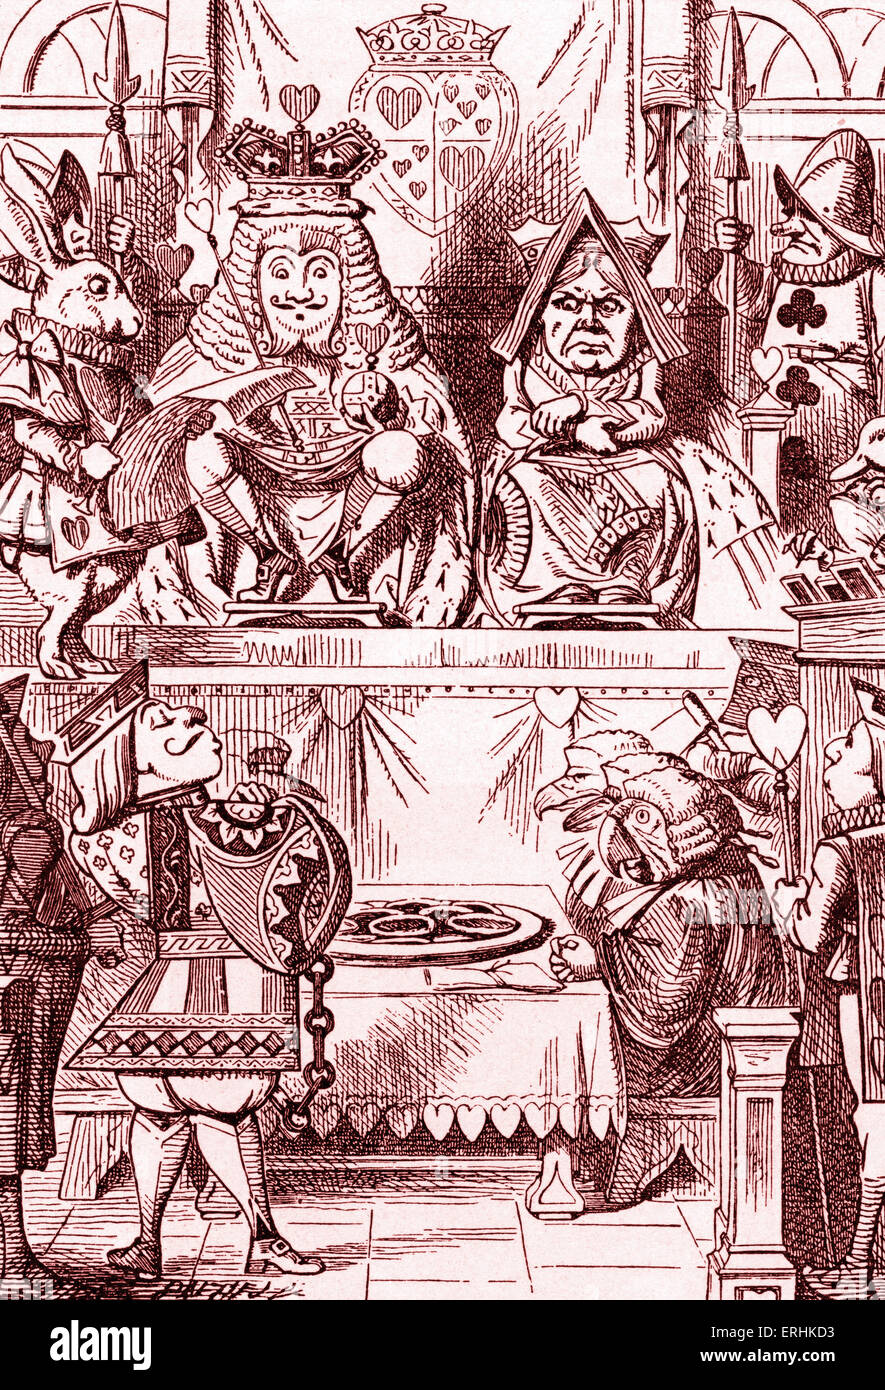 "¿Quién robó las tartas?" Juicio de Knave de Corazones de Alicia en el país de las maravillas por Lewis Carroll (Charles Lutwidge Dodgson), inglés Foto de stock